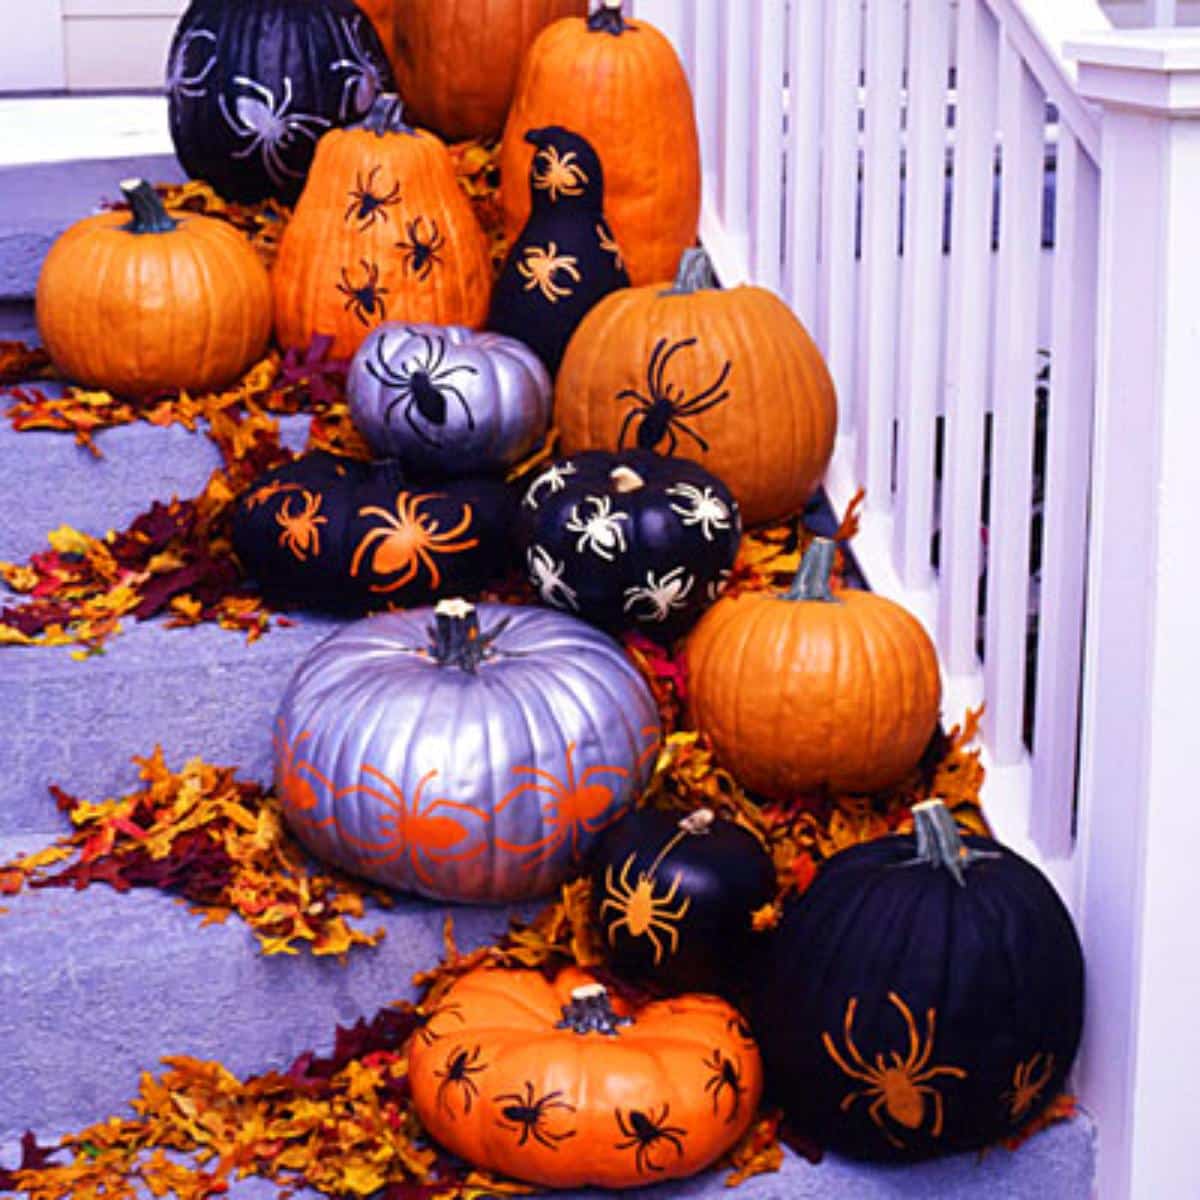 DIY Stenciled Pumpkins on stairs.